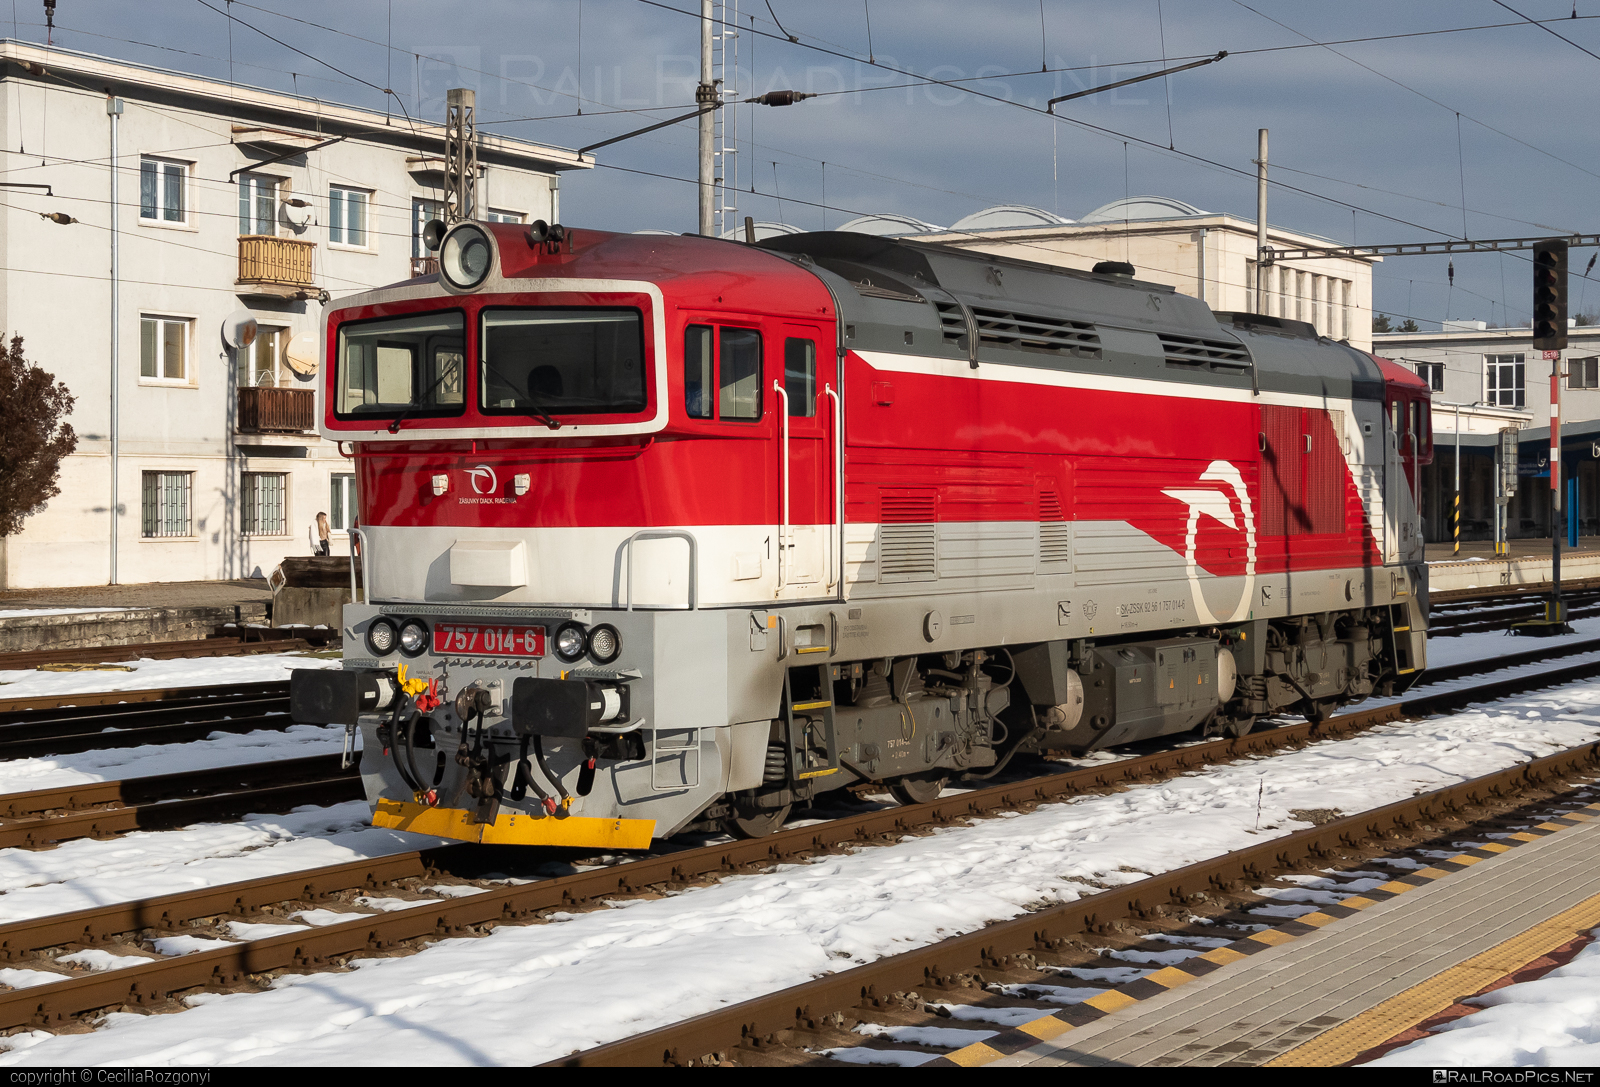 ŽOS Zvolen Class 757 - 757 014-6 operated by Železničná Spoločnost' Slovensko, a.s. #ZeleznicnaSpolocnostSlovensko #brejlovec #locomotiveclass757 #okuliarnik #zoszvolen #zssk